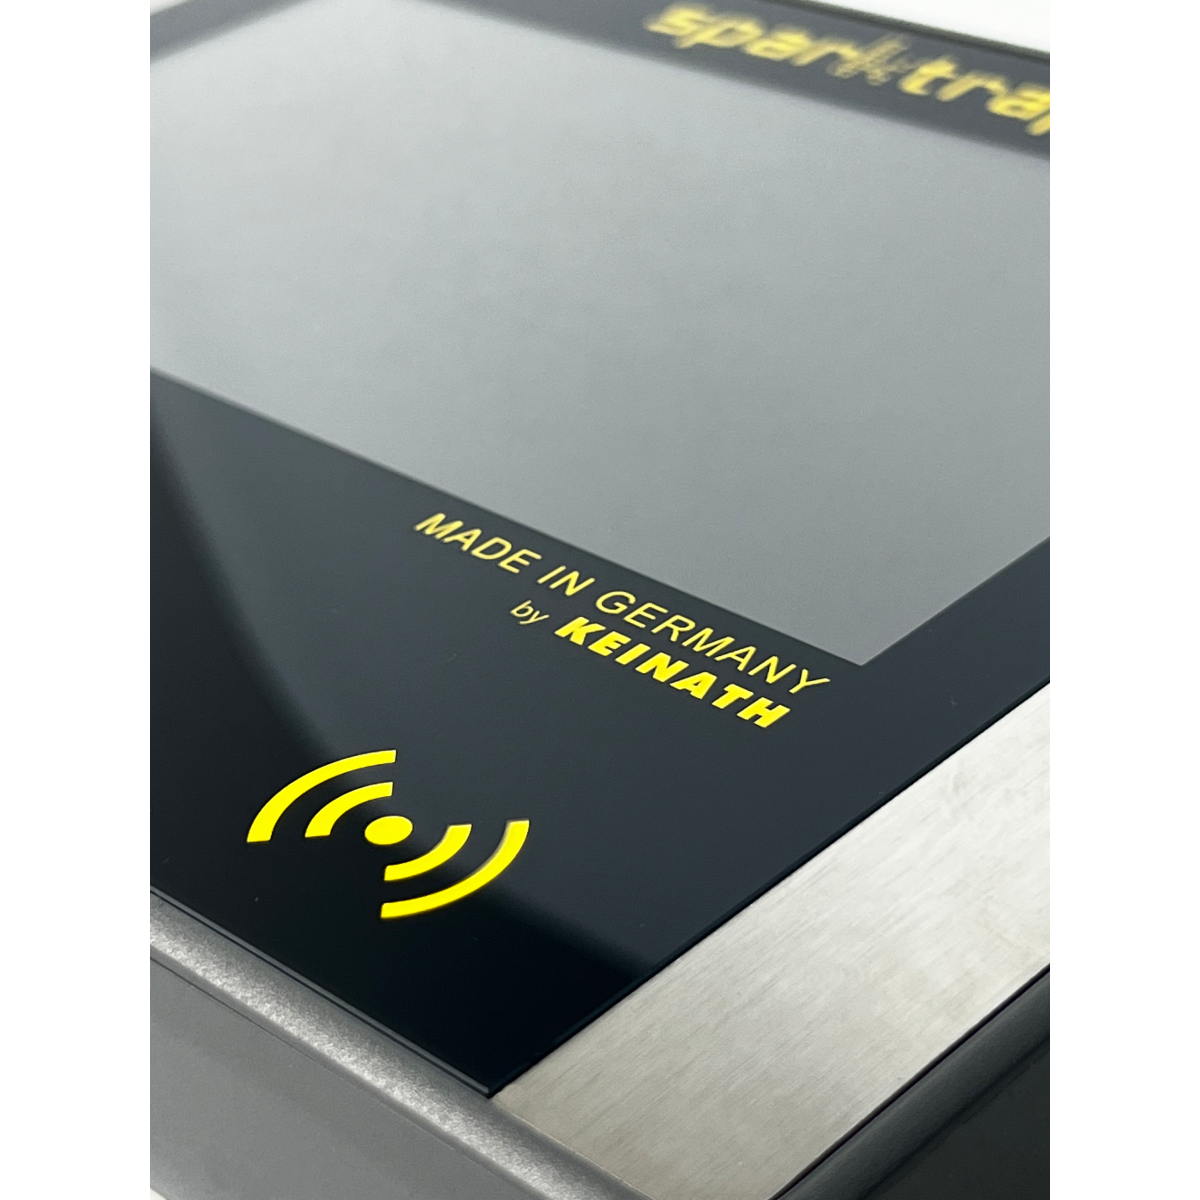 Ausführung:EPA Gatekeeper compact+ mit RFID-Kartenleser inkl. Netzteil und Schuhwerkelektrode